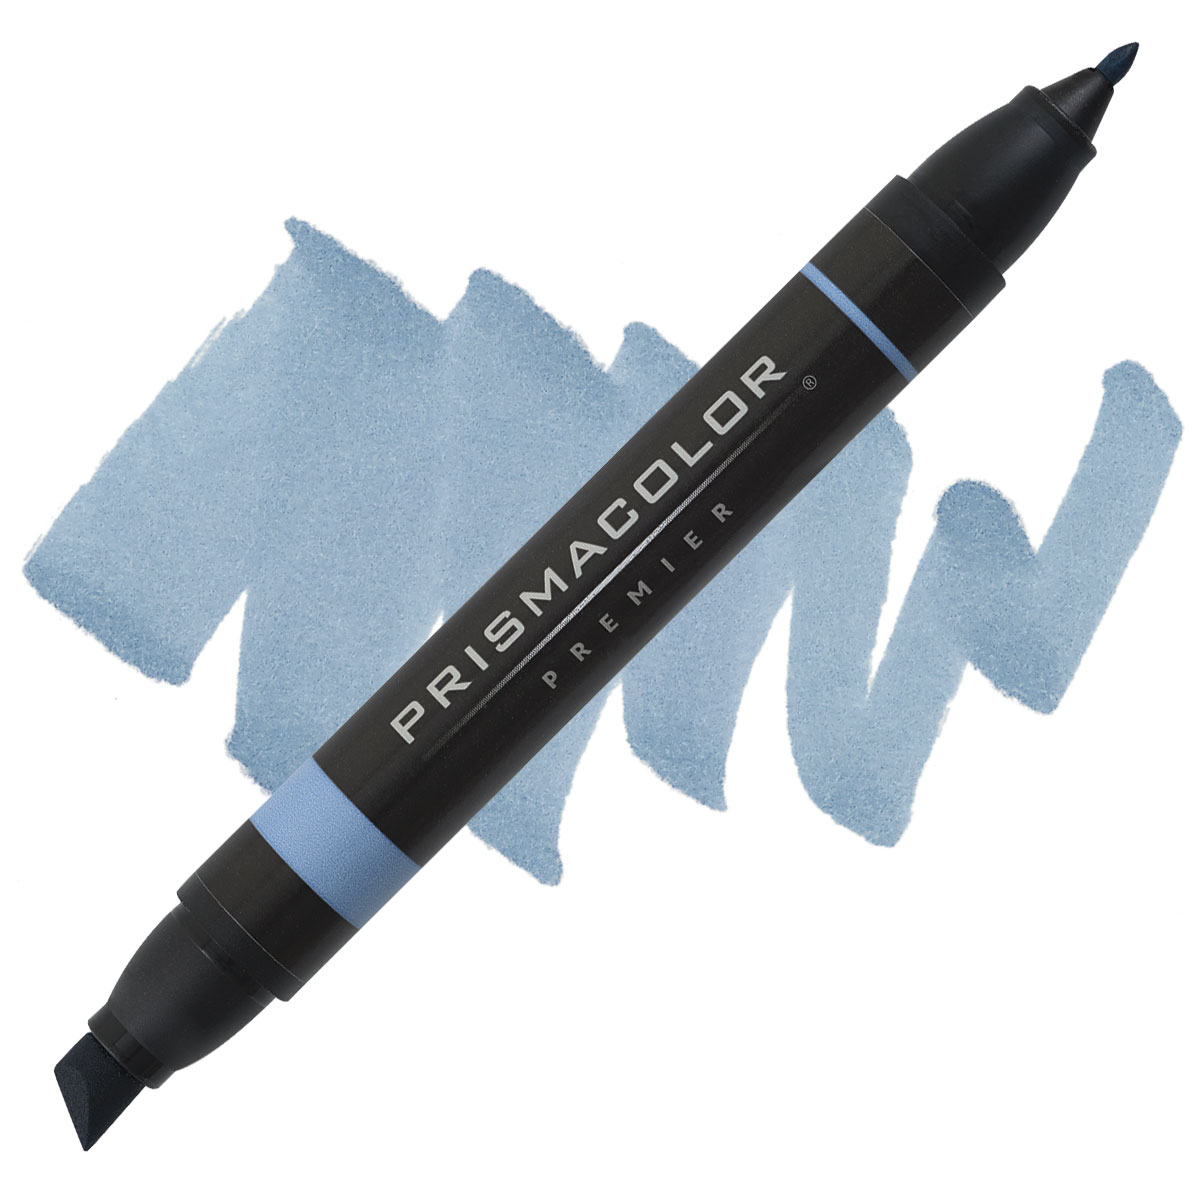 Prismacolor Premier Dual-Ended Art Marker - Black